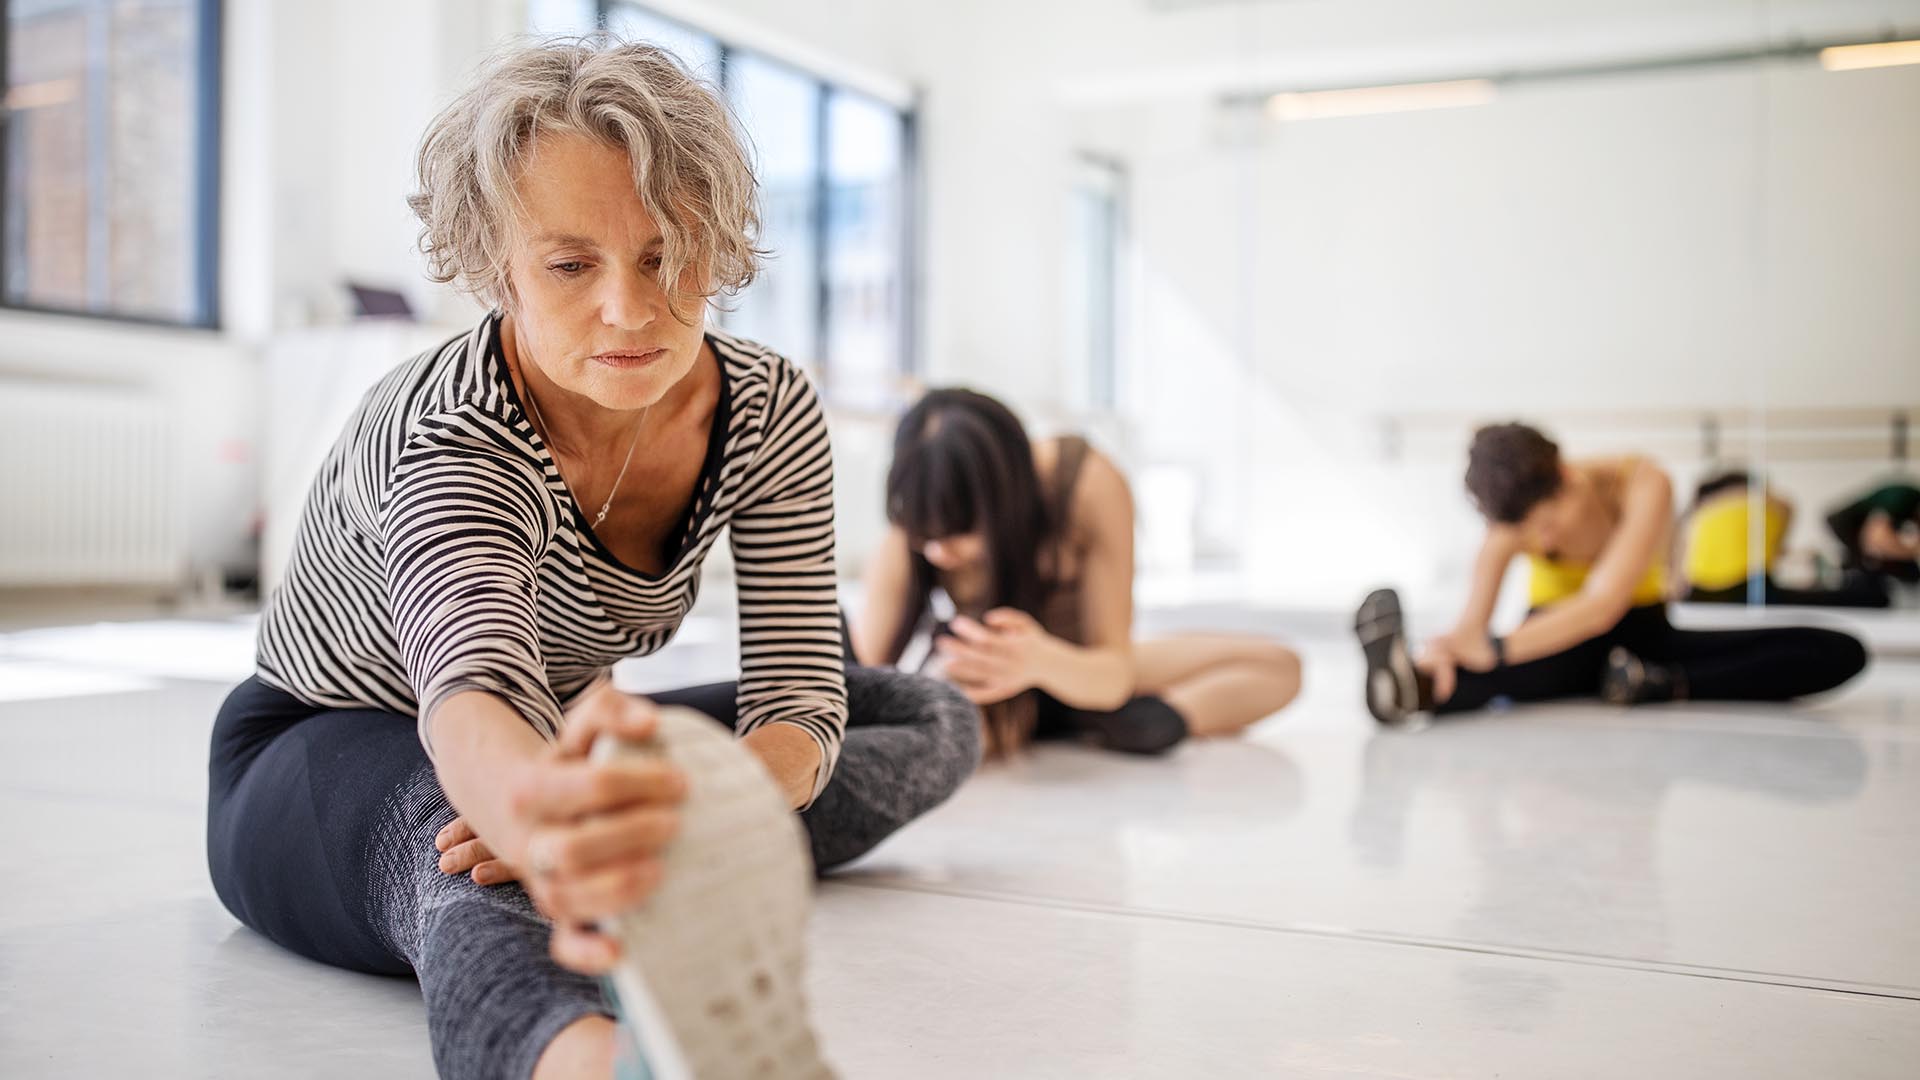 El hecho de estirar los músculos y, por tanto, mantenerlos activos, favorece el flujo sanguíneo, algo especialmente importante durante la tercera edad porque tiende a ralentizarse (Getty Images)